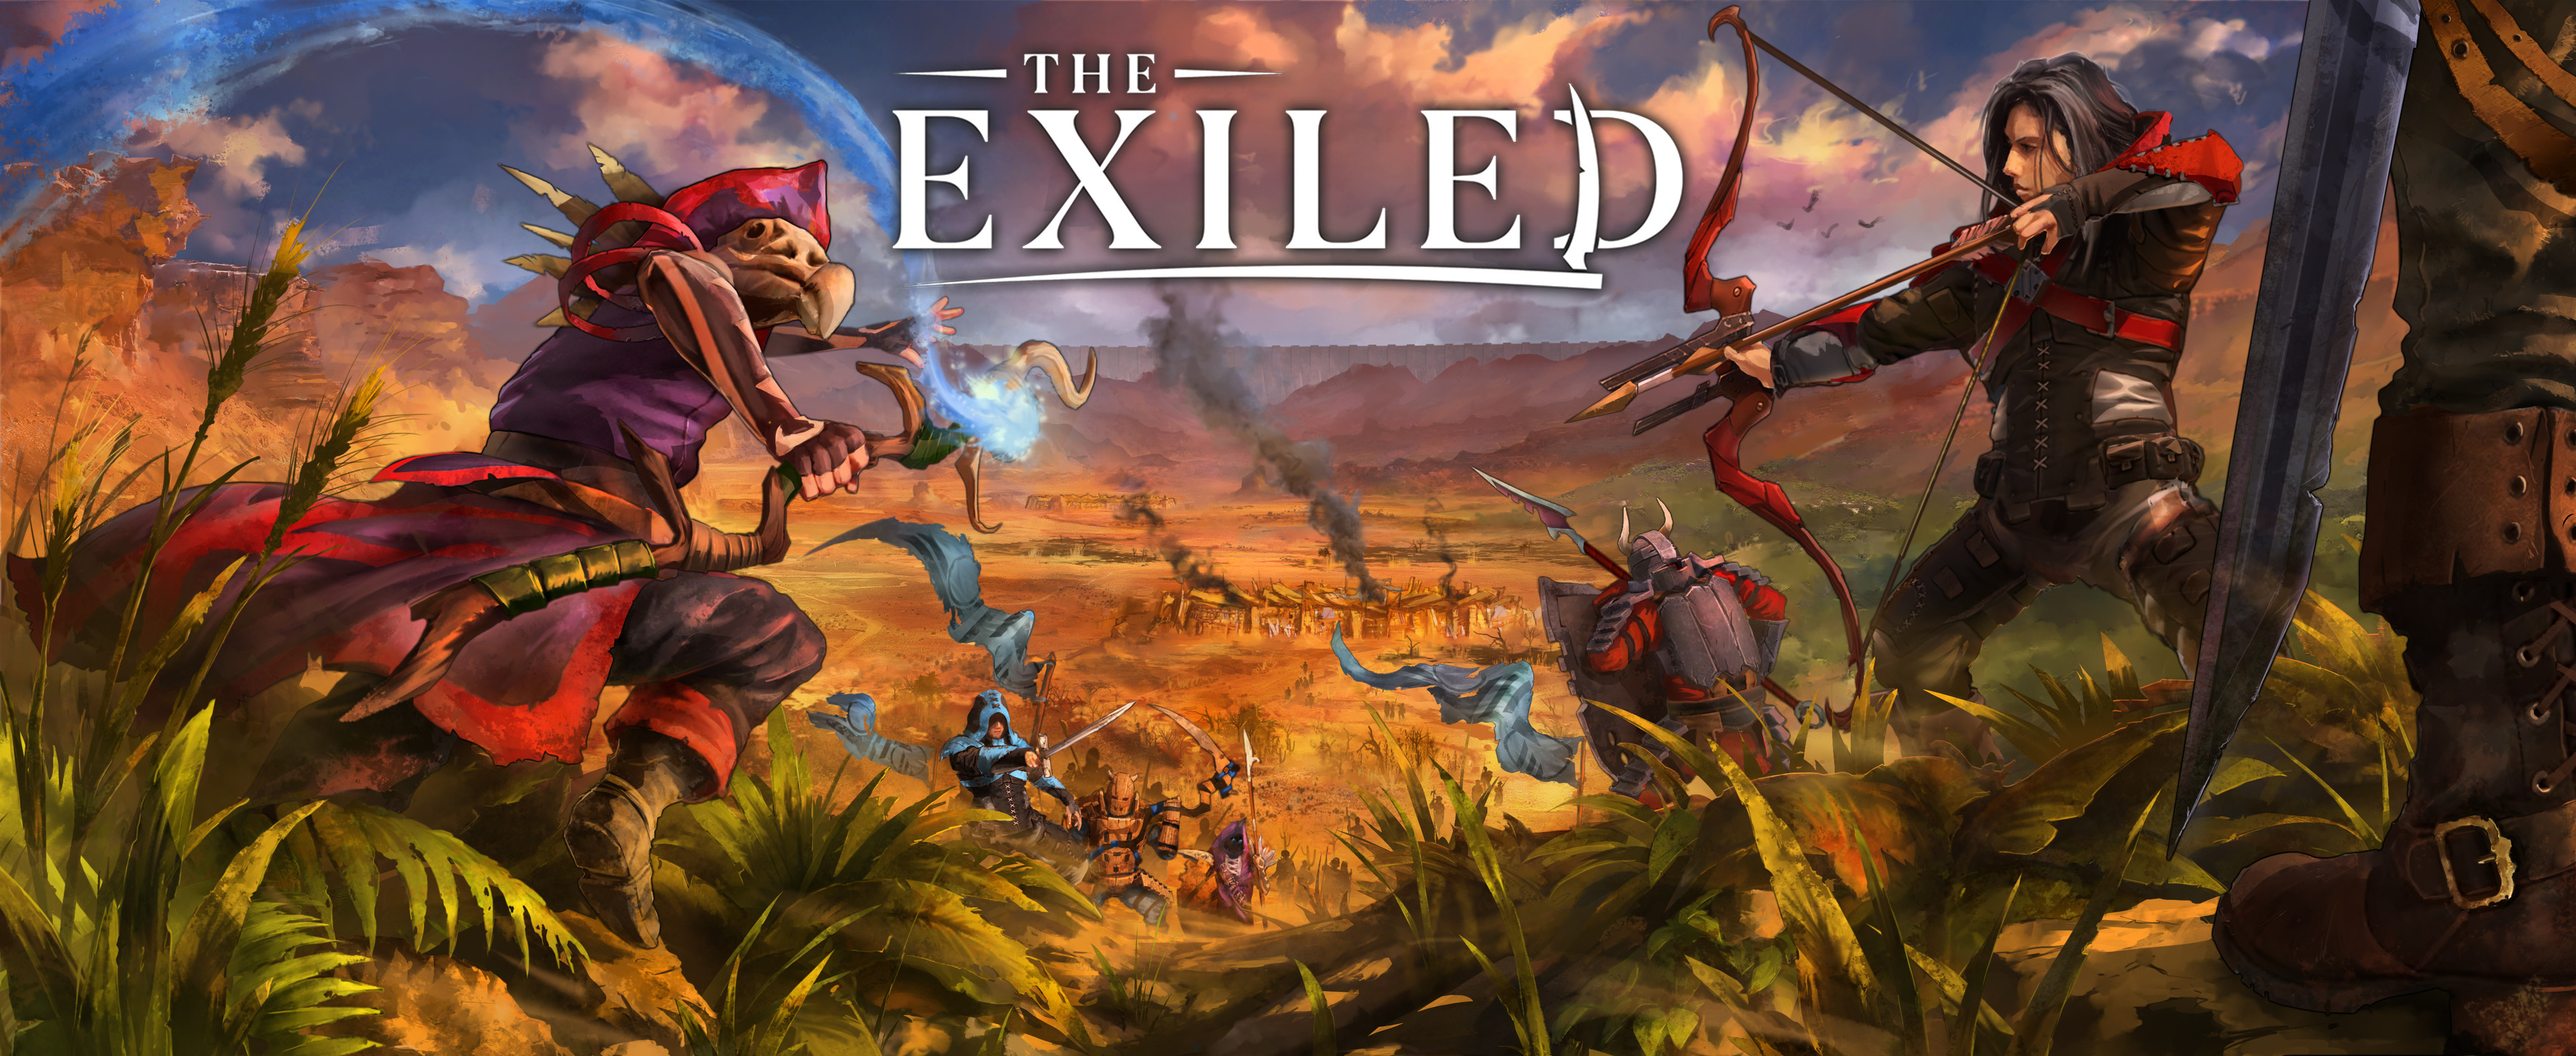 The Exiled: Latest Marketing Image